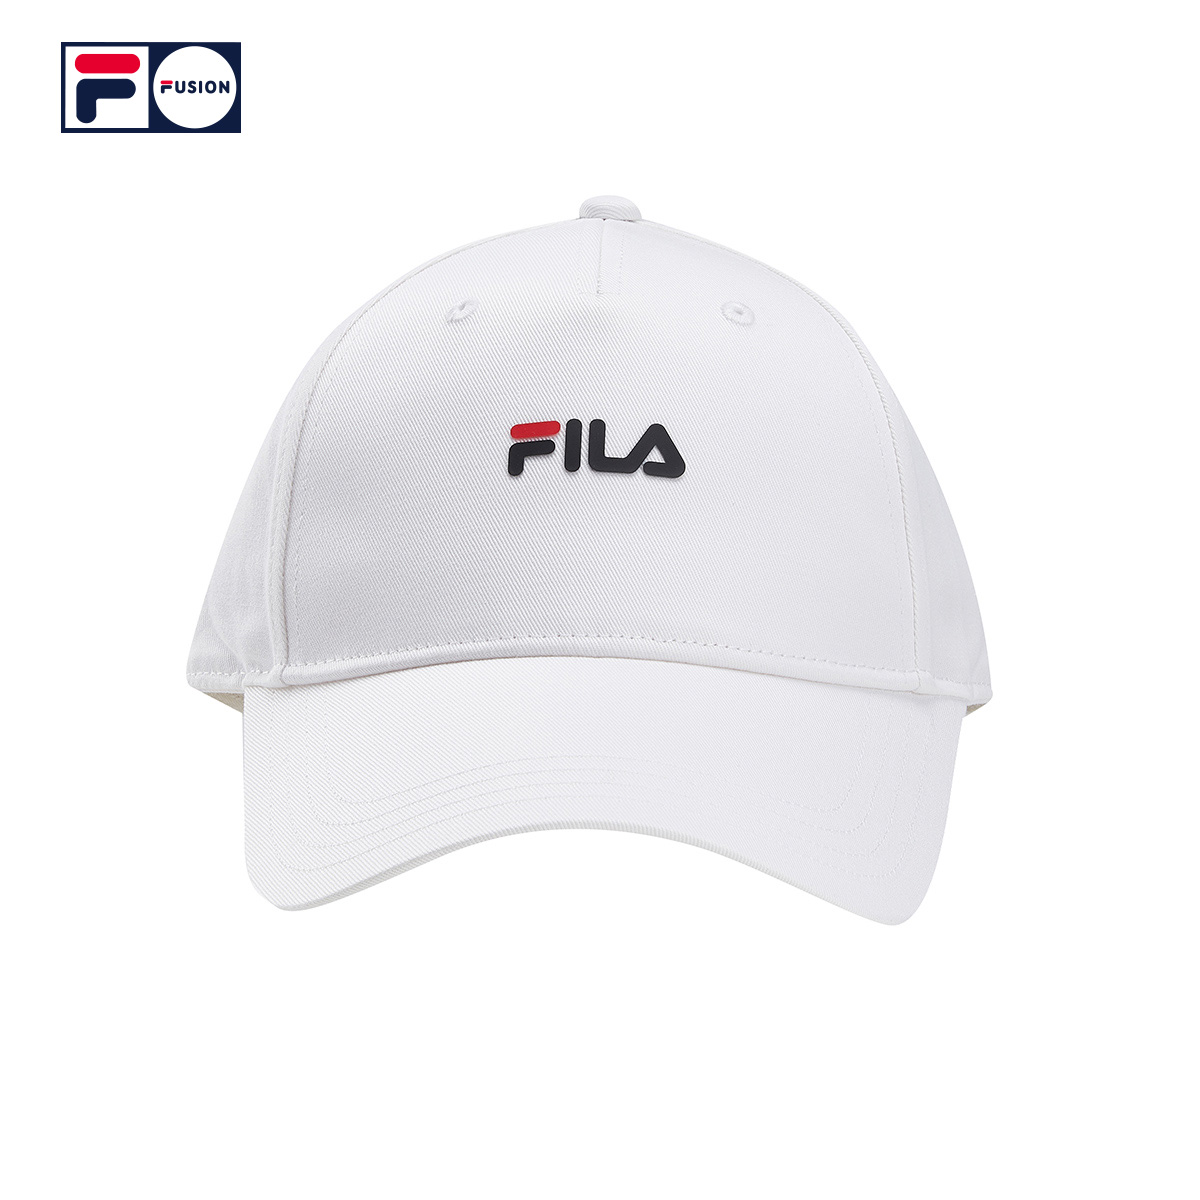 fila fusion 斐乐情侣款棒球帽新款男女帽子简约休闲小logo遮阳帽